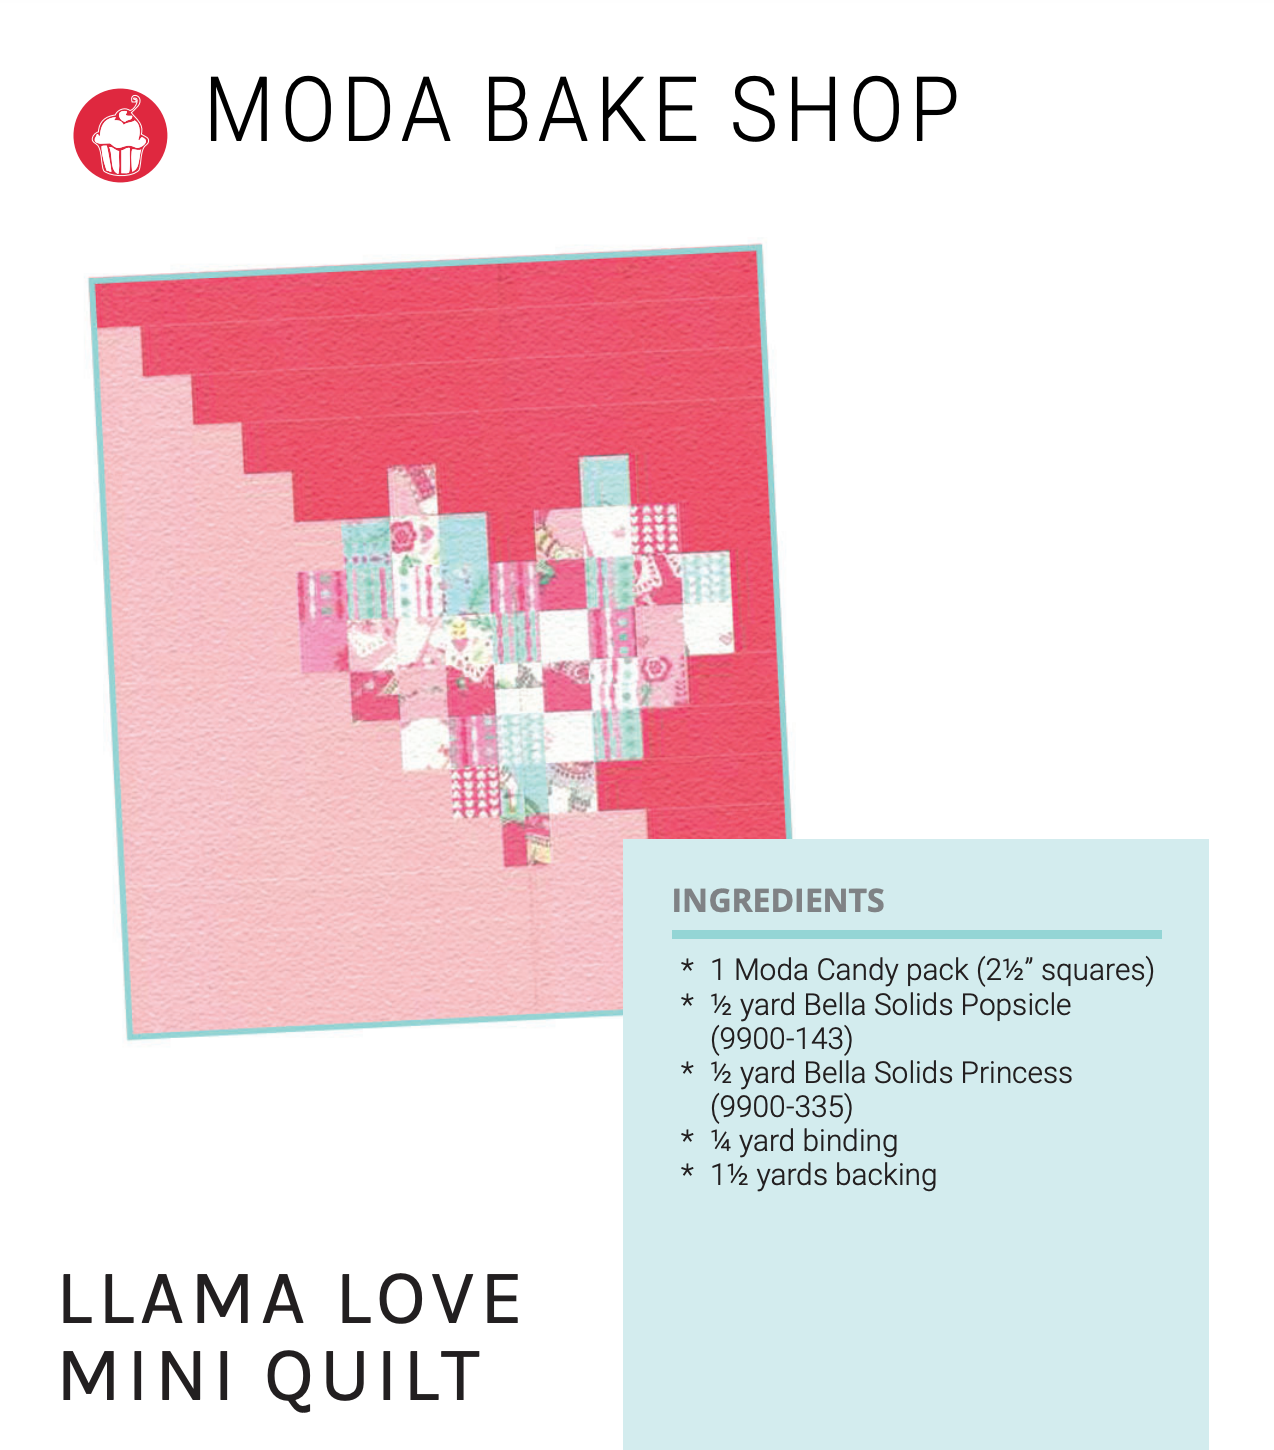 Llama Love Mini Quilt